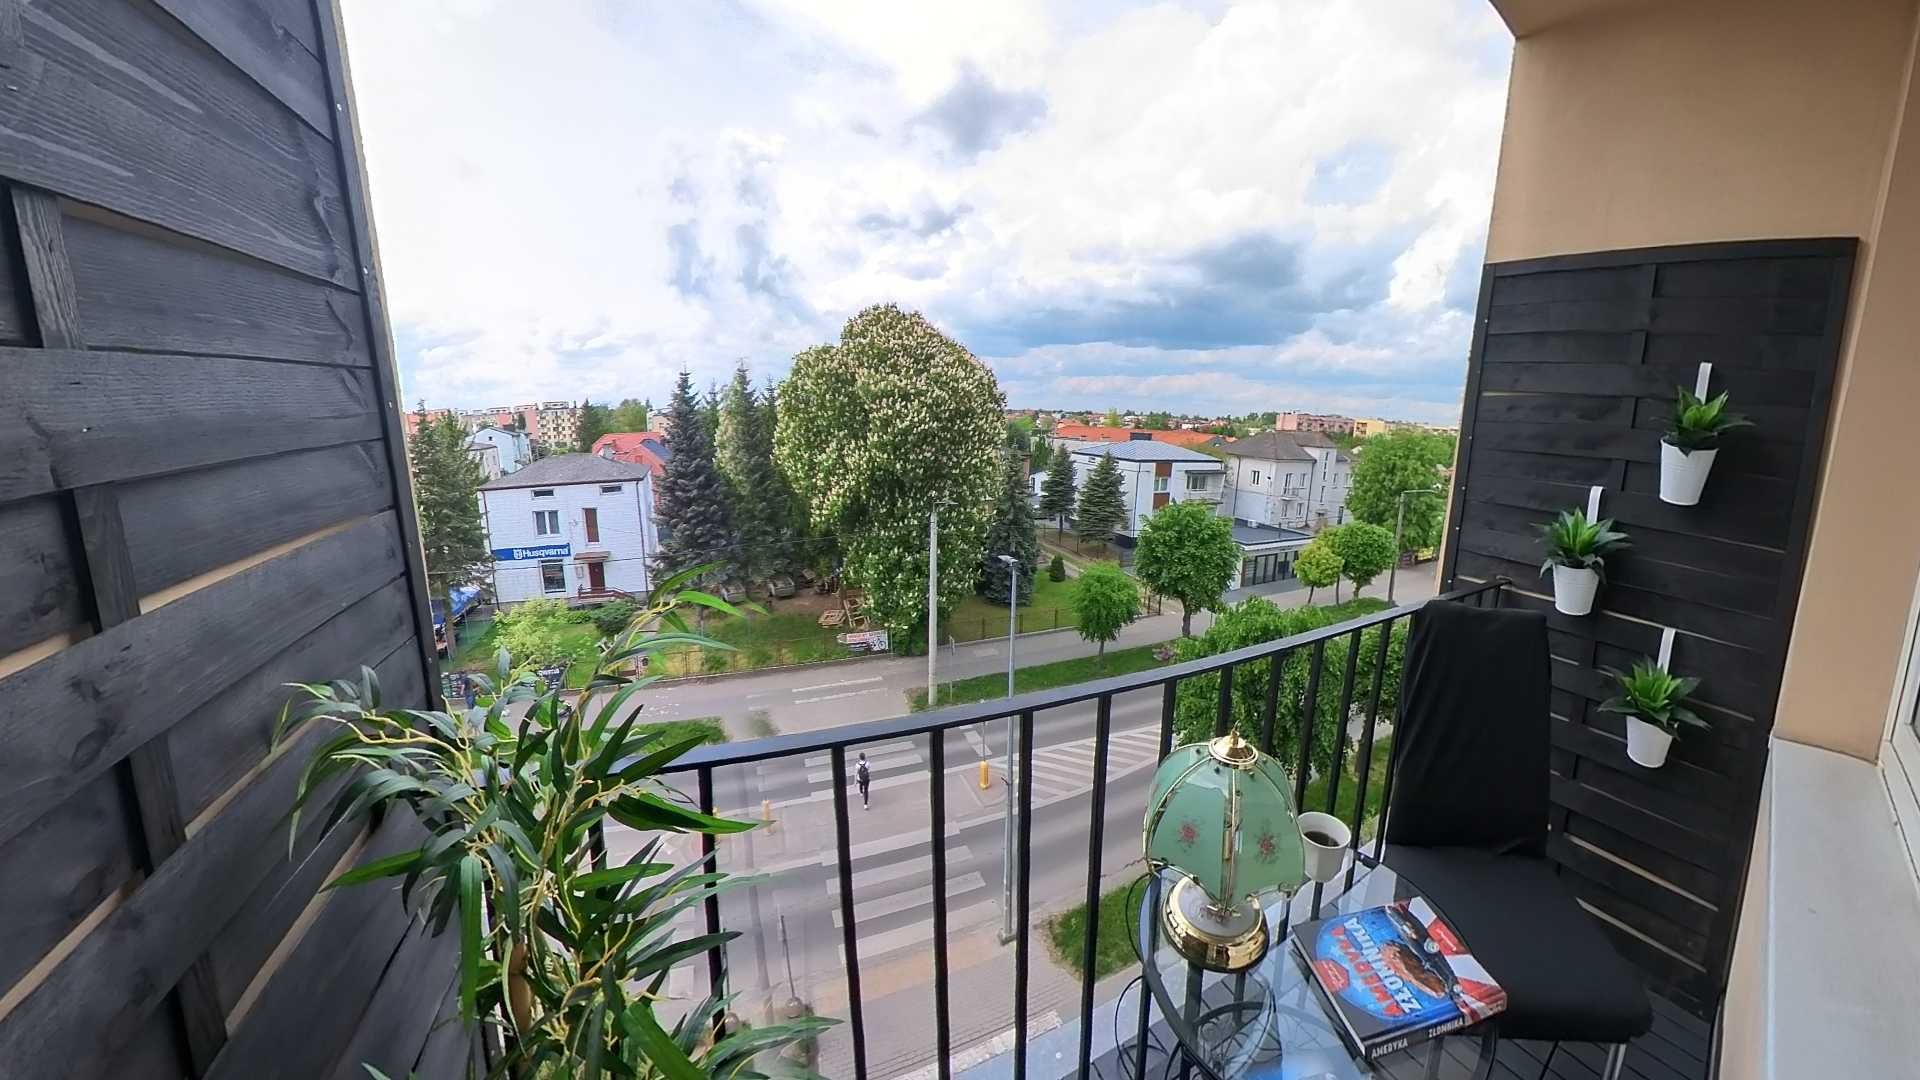 Mieszkanie, 50m2, balkon, po remoncie, zdjęcia 3D